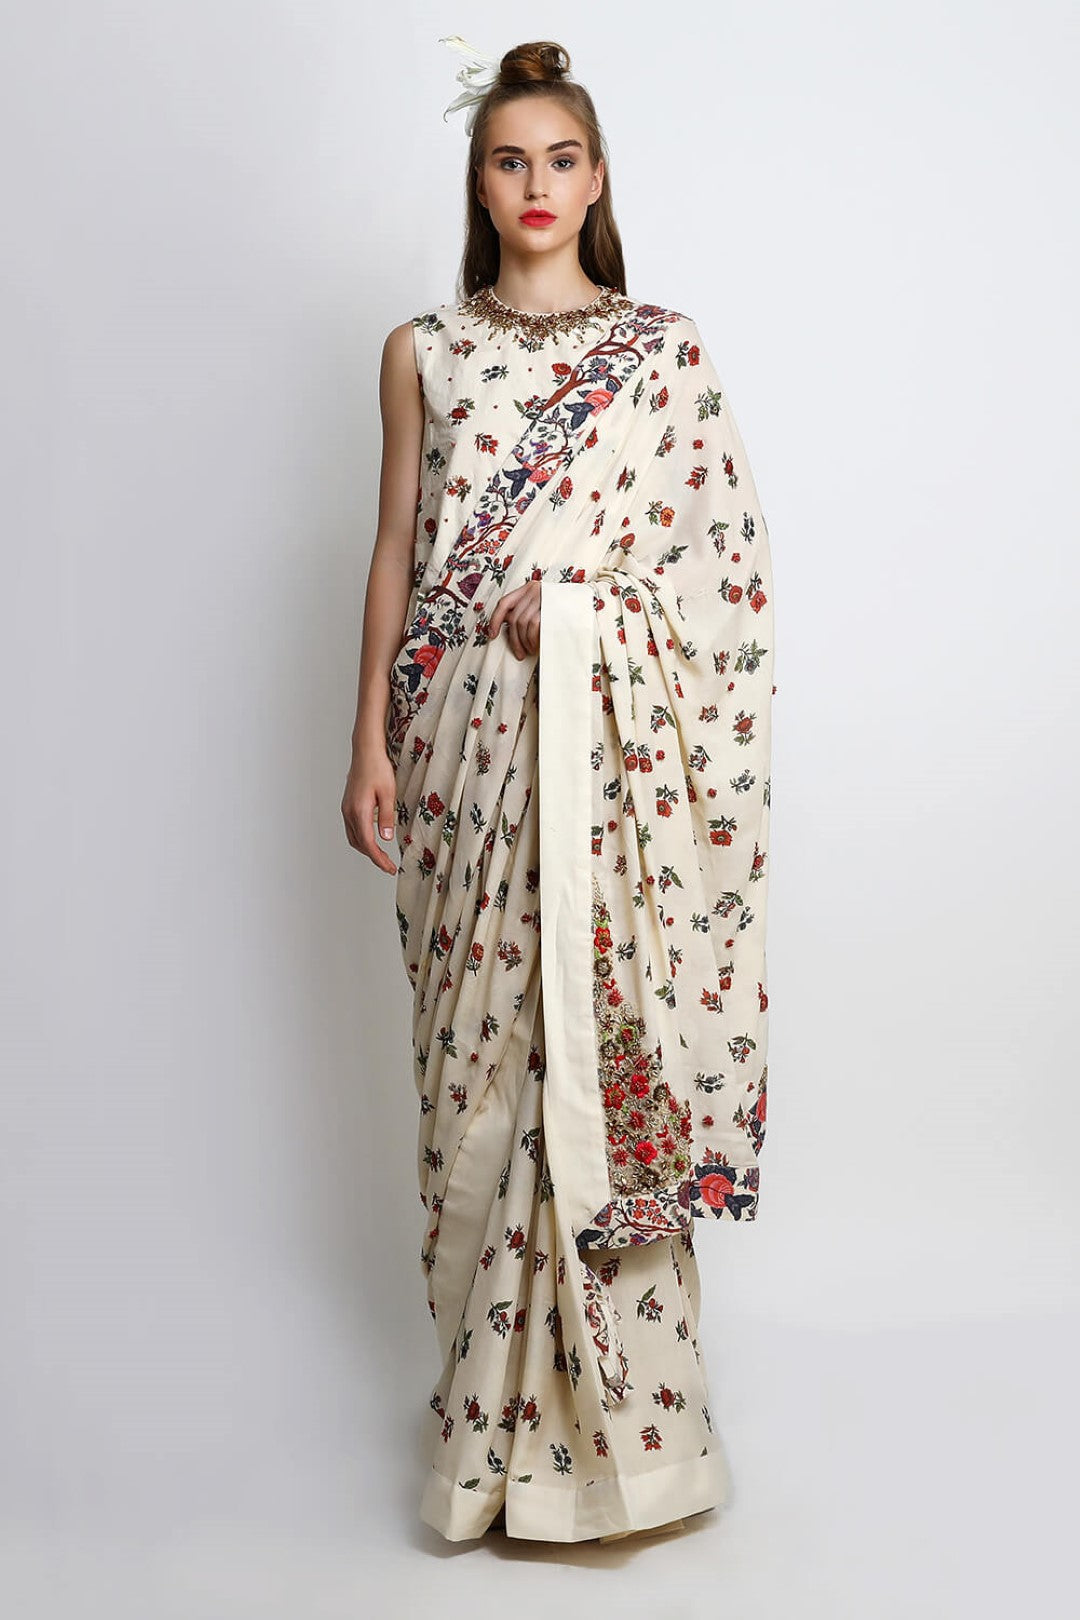 printed saree with peplum top